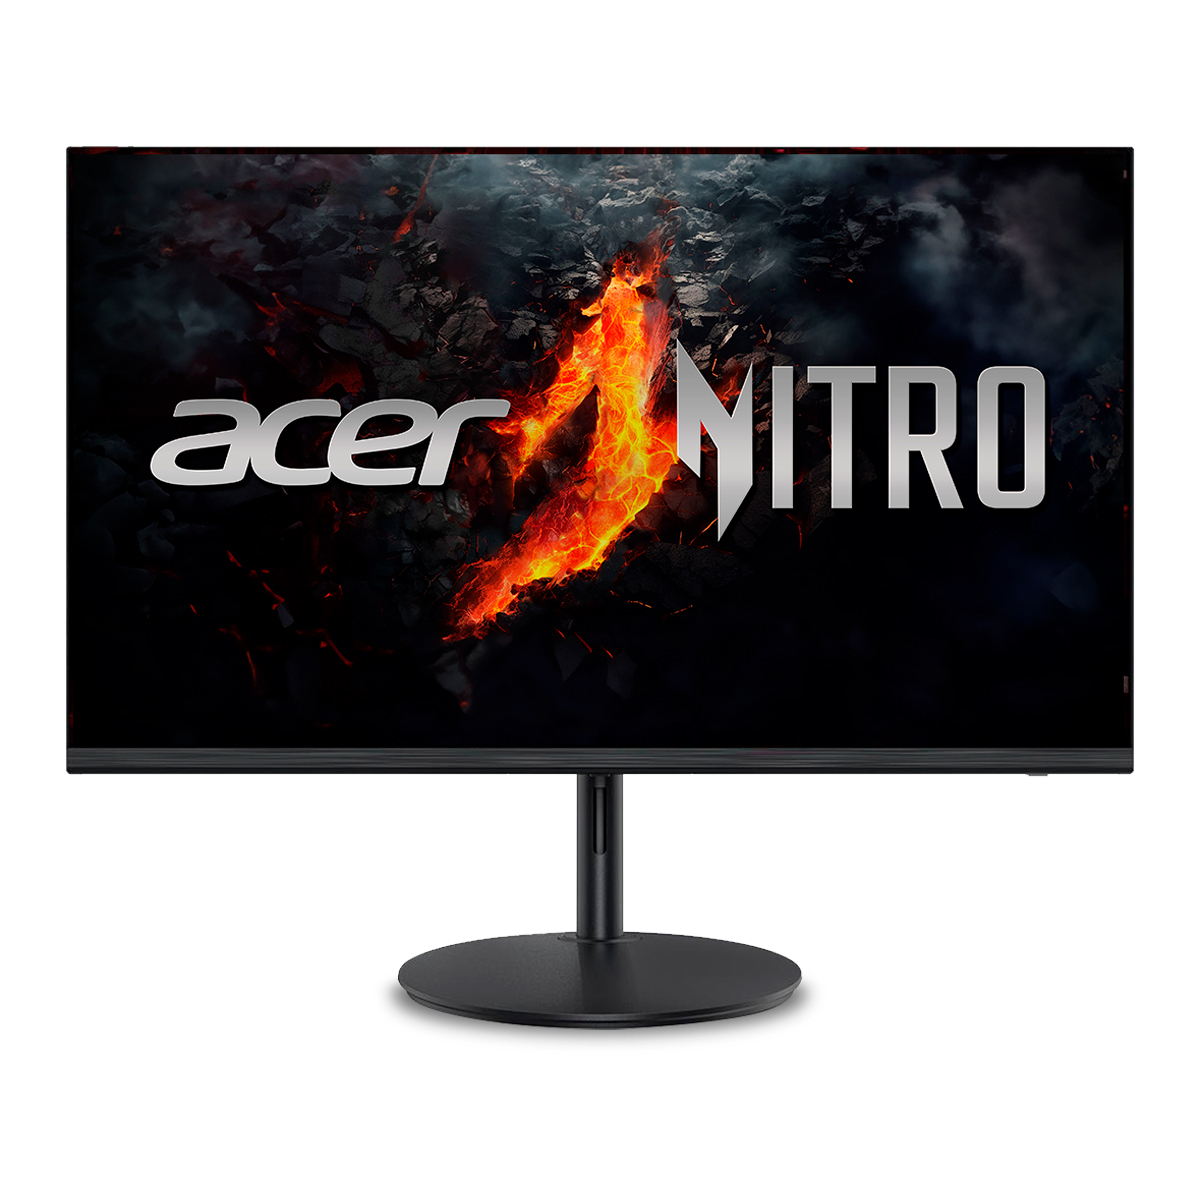 Monitor Acer Nitro XF240Y M3 23.8 pulg. FHD AMD FreeSync Premium